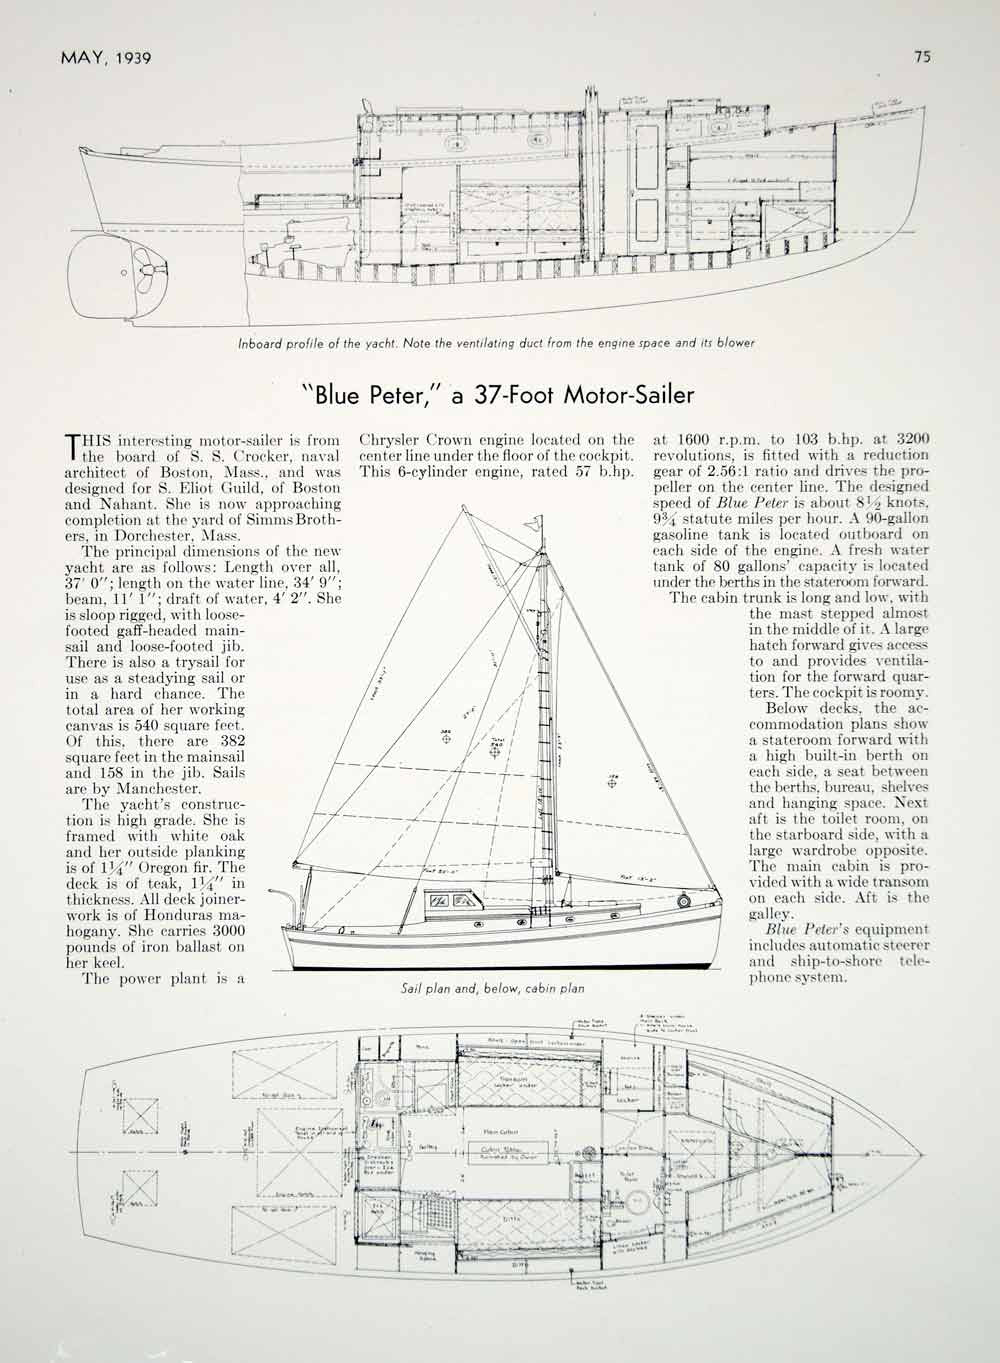 1939 Article Blue Peter Sailboat Yacht Samuel Sturgis Crocker Sail Cabin Plans - Period Paper
